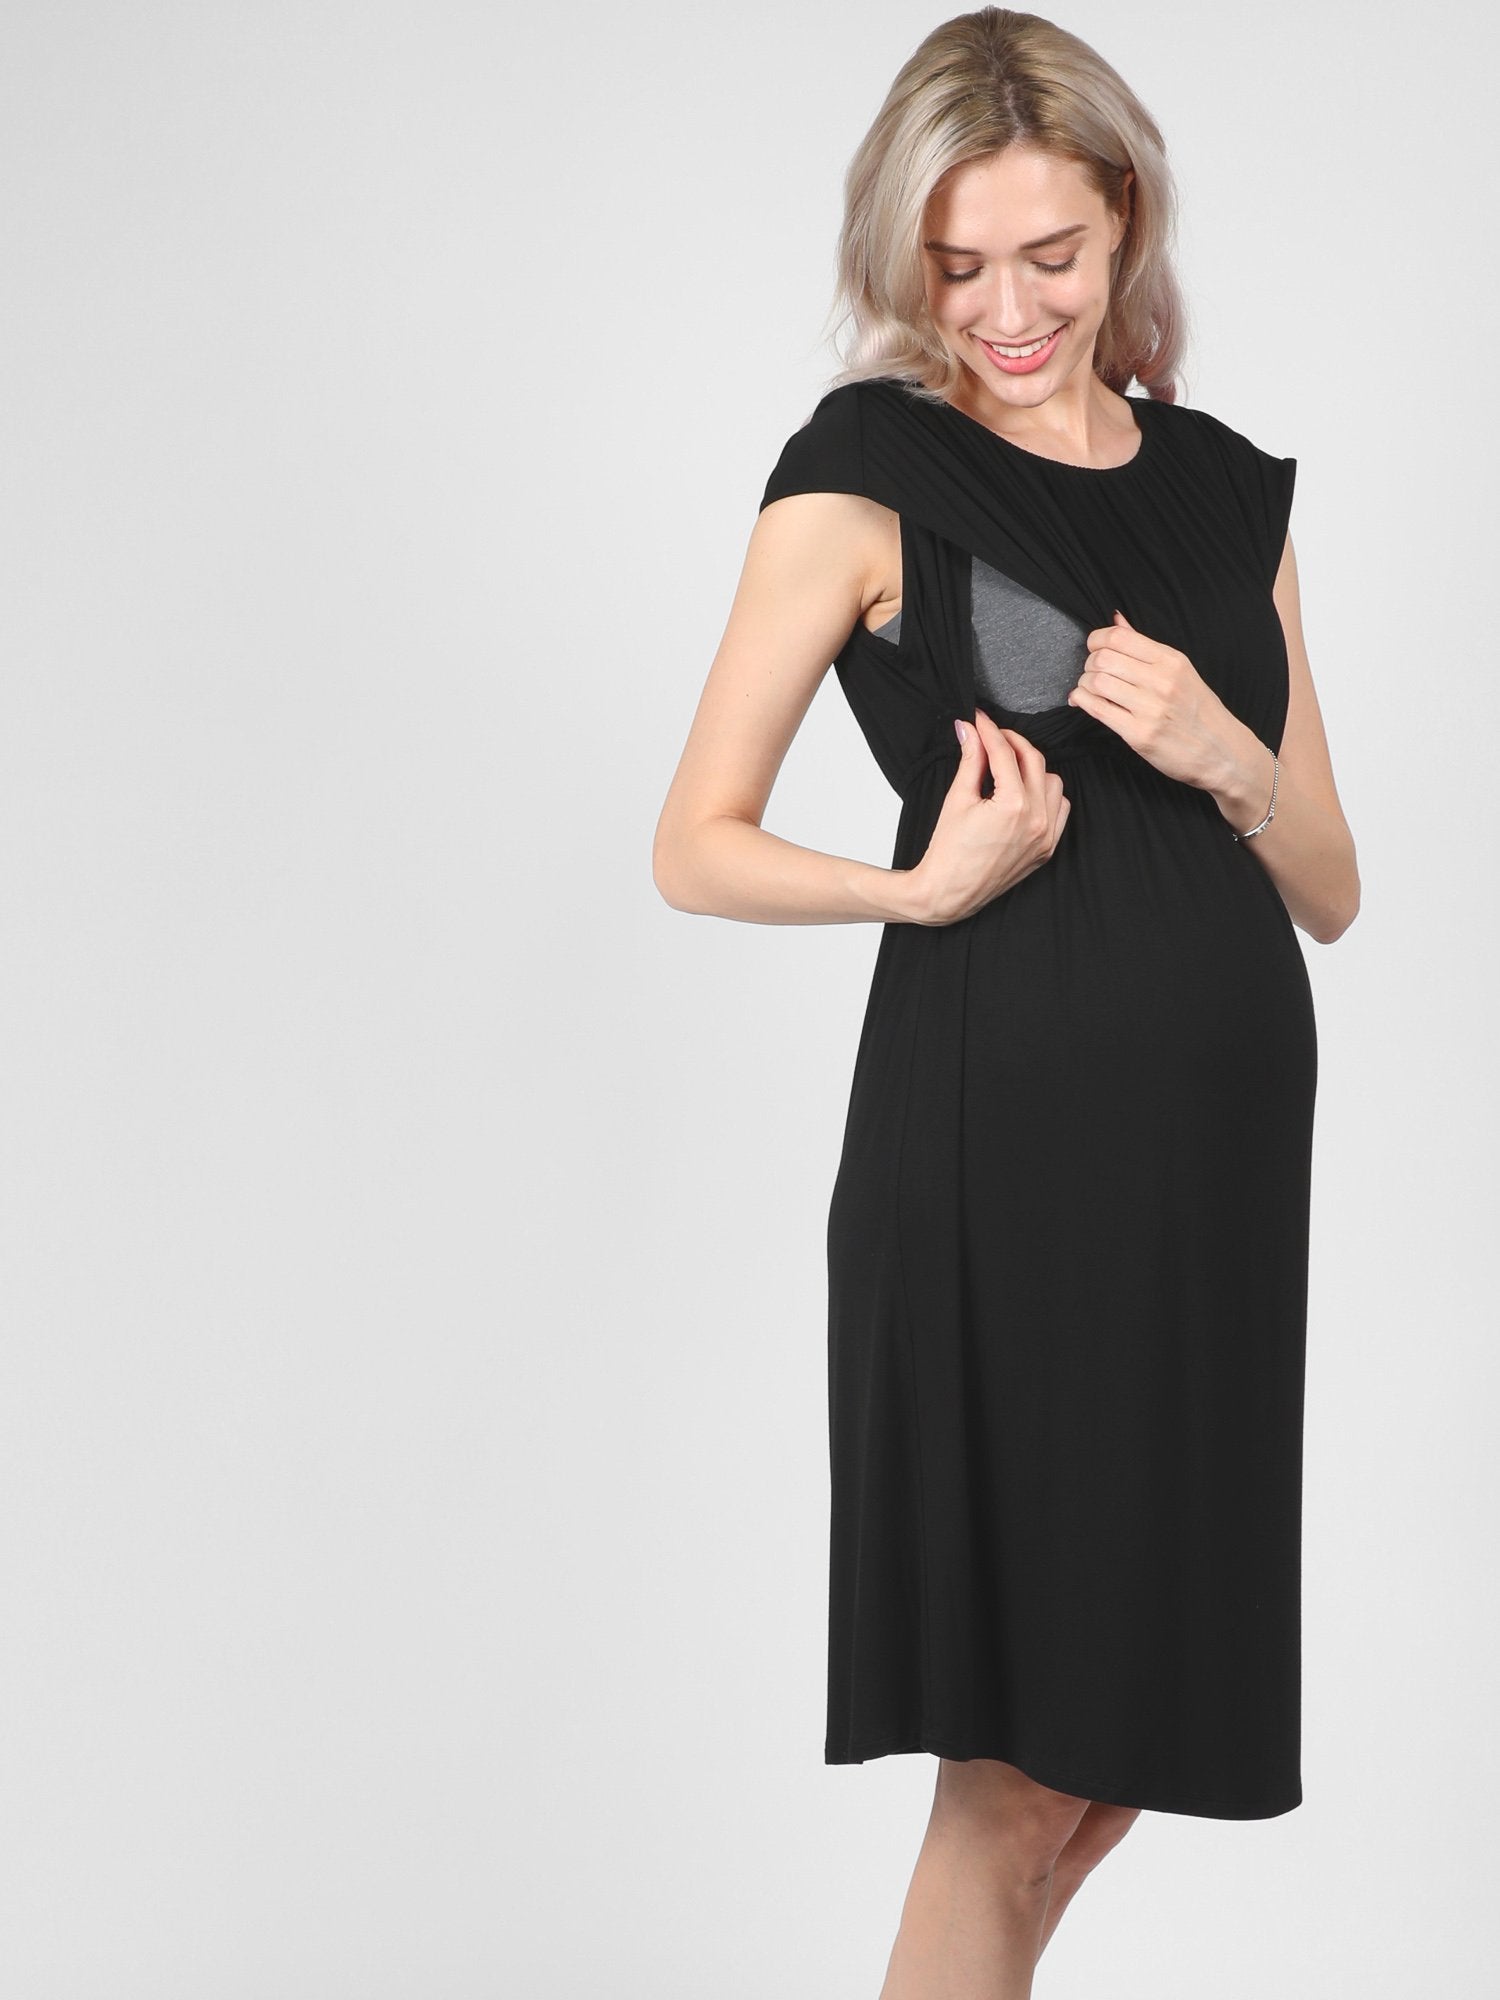 Bellefinery dress Black Louise Dress